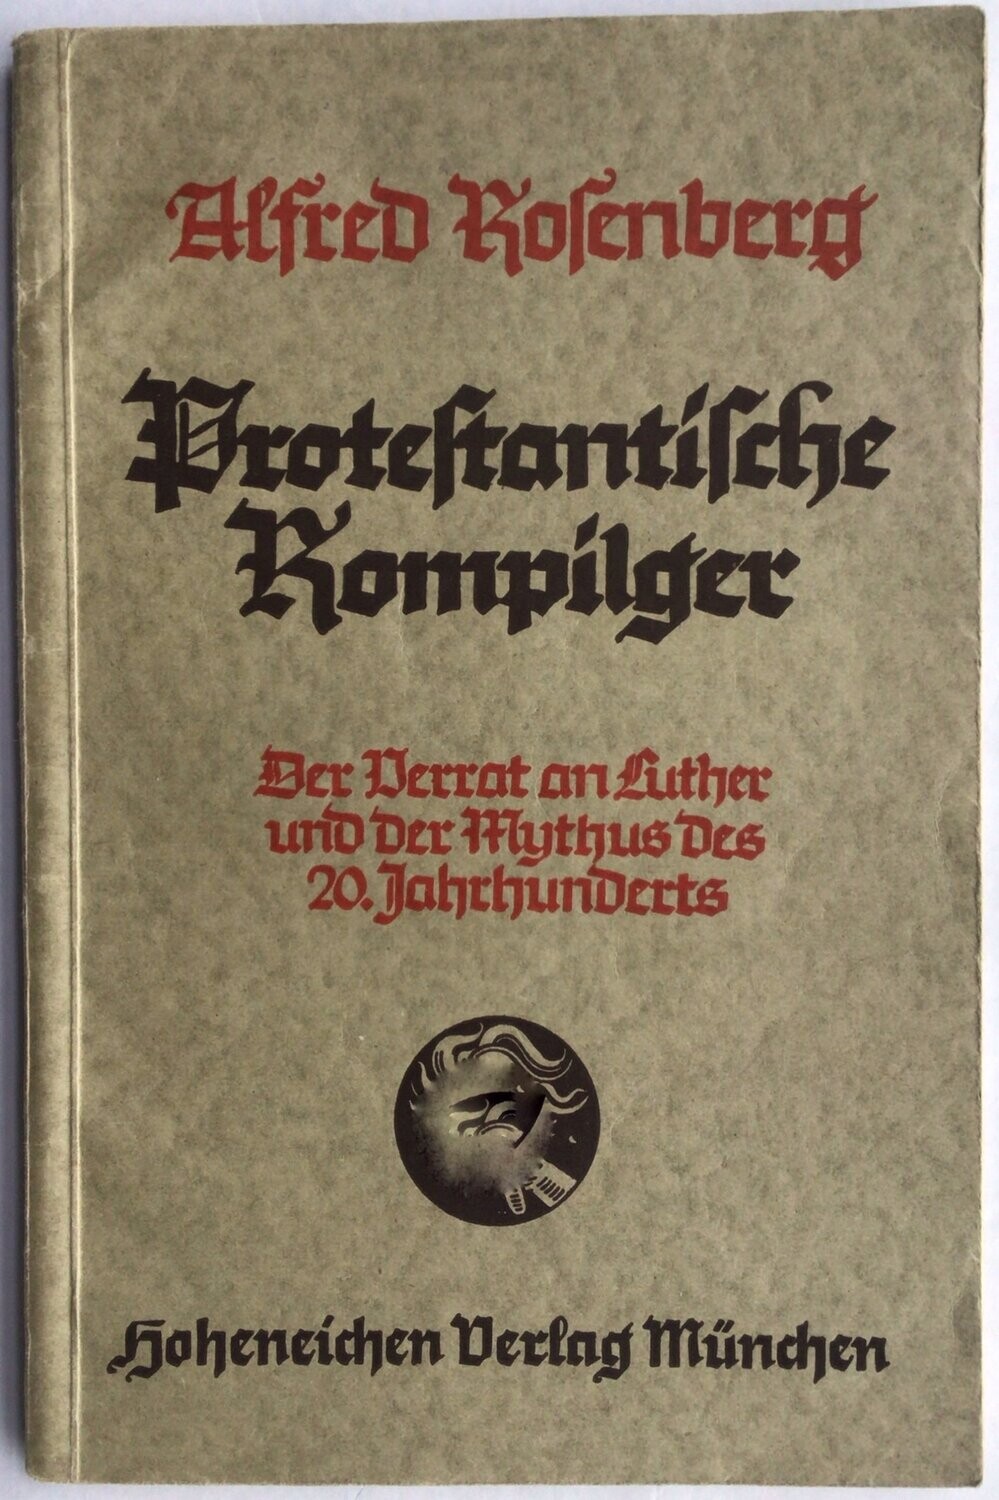 Protestantische Rompilger - Broschierte Ausgabe (4. Auflage) aus dem Jahr 1937